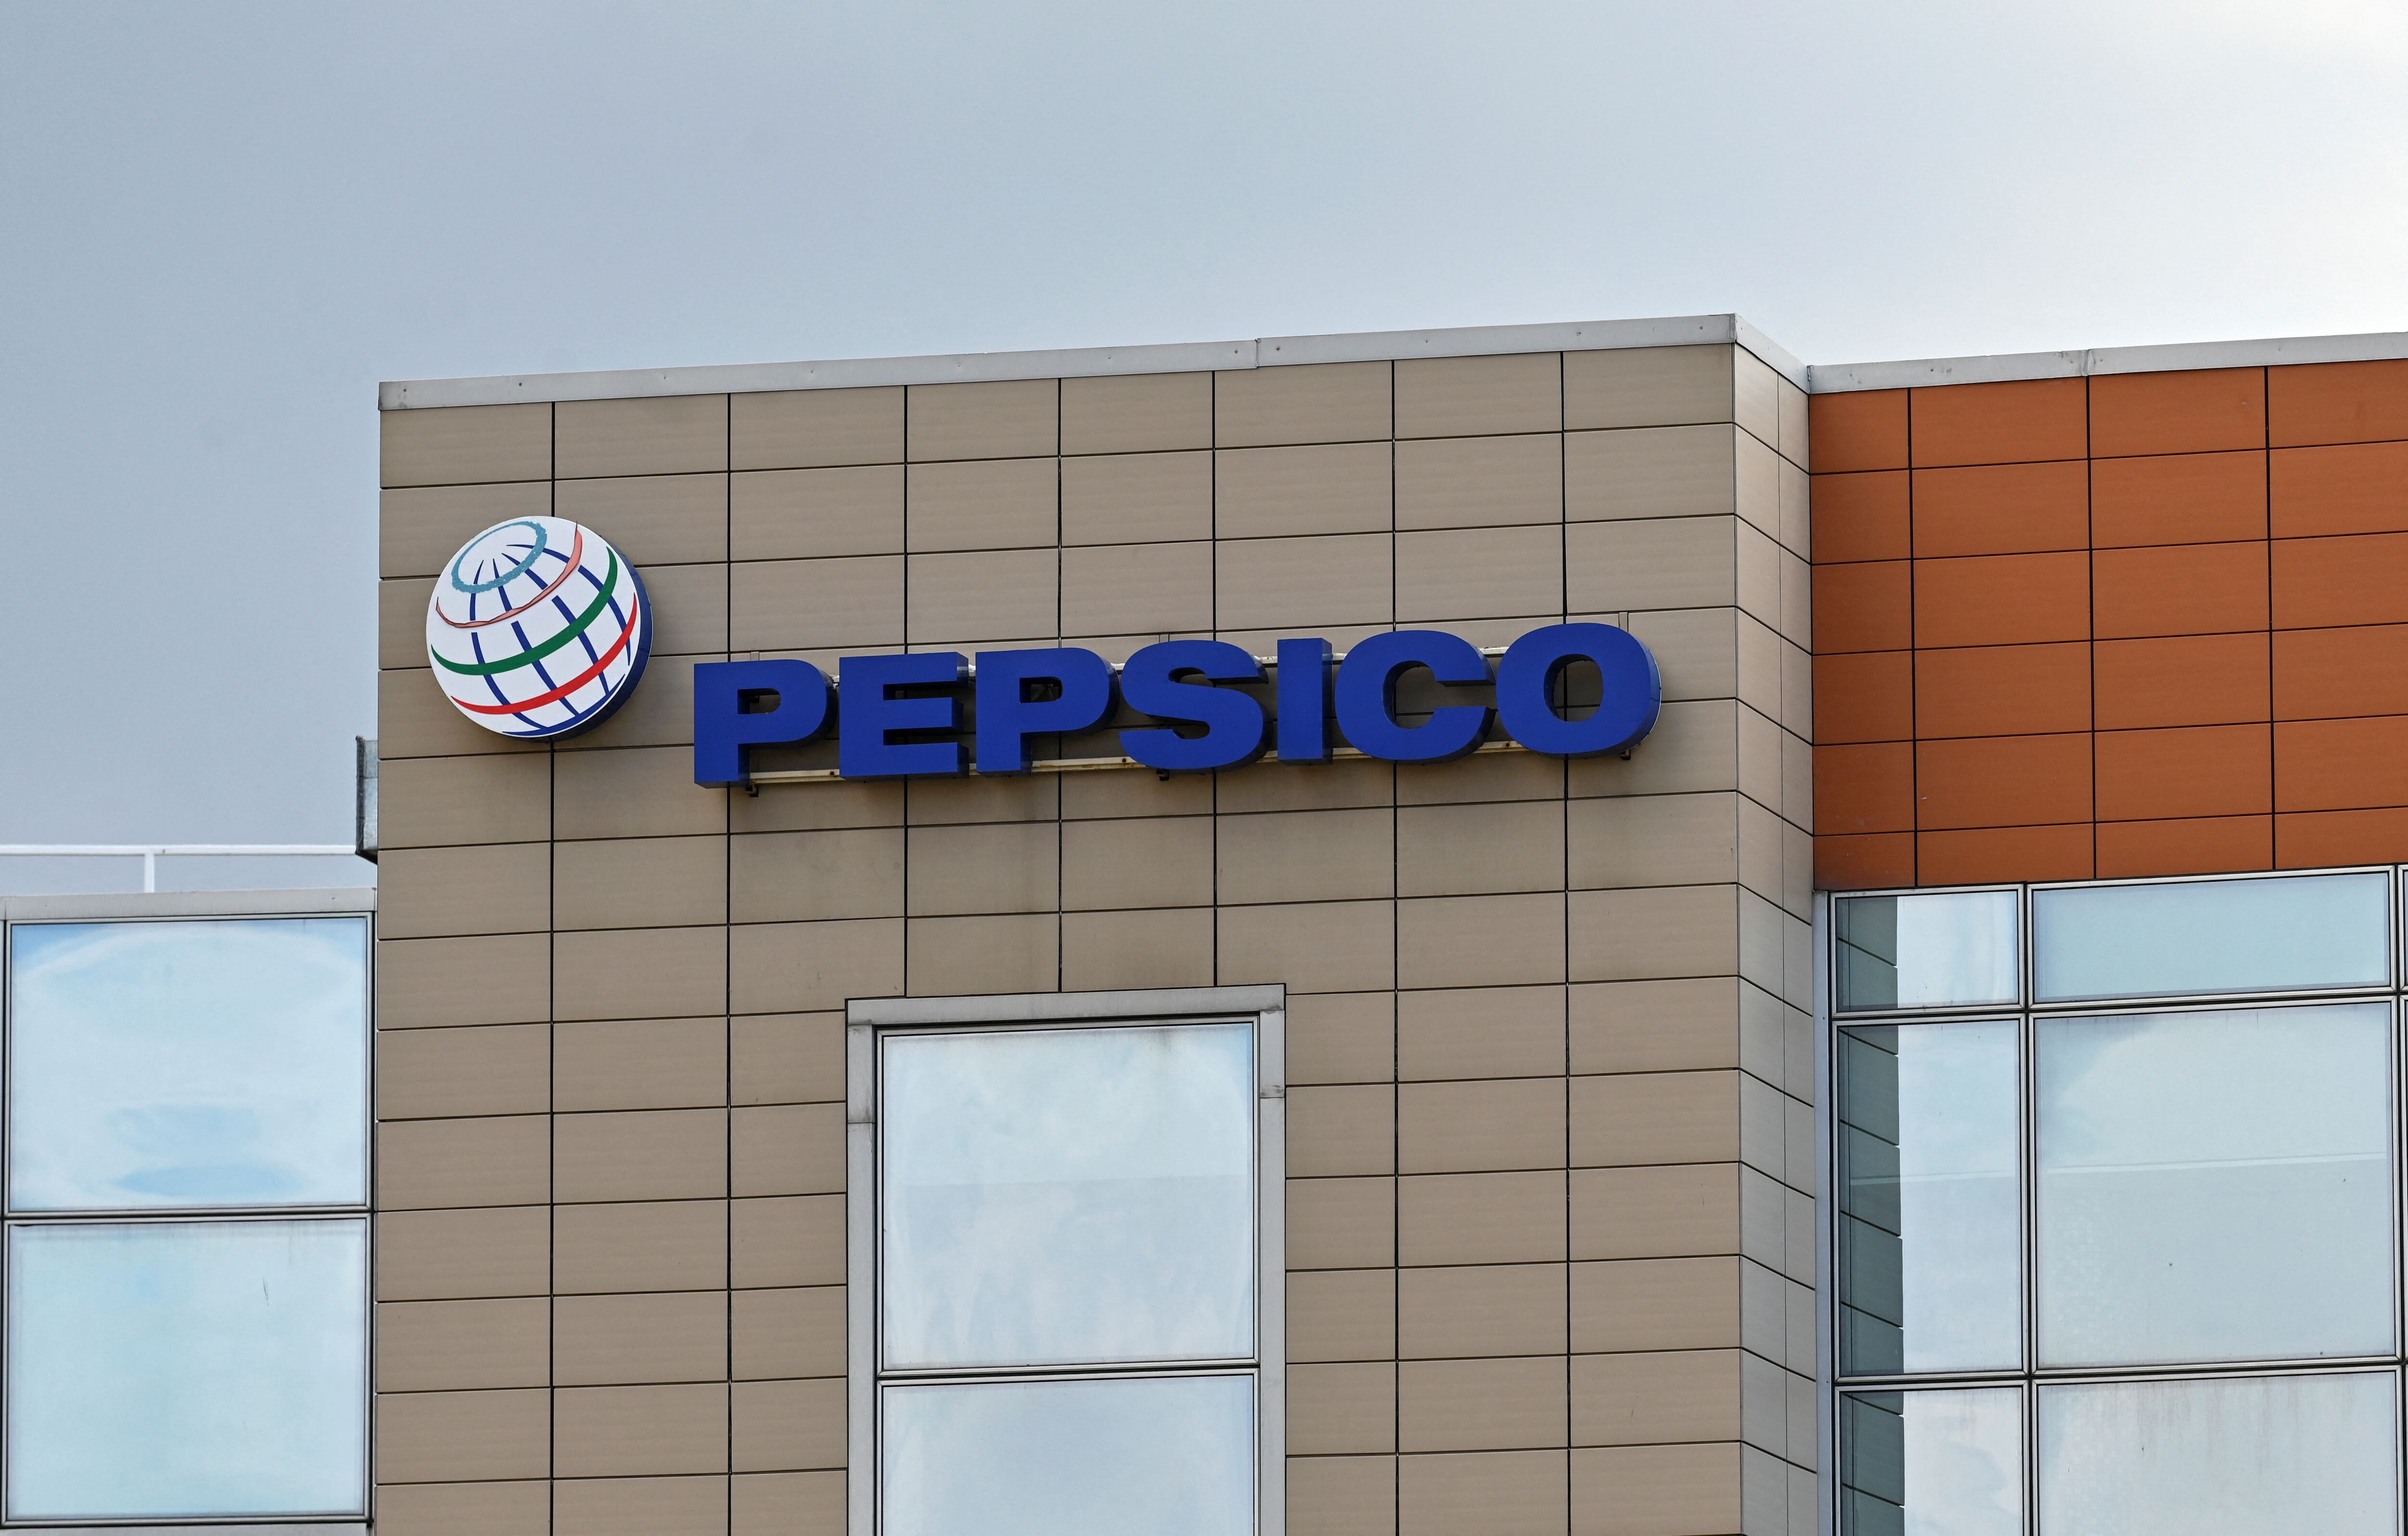 Una vista de la planta de PepsiCo en Azov, Rusia. Marzo 9, 2022. REUTERS/Sergey Pivovarov